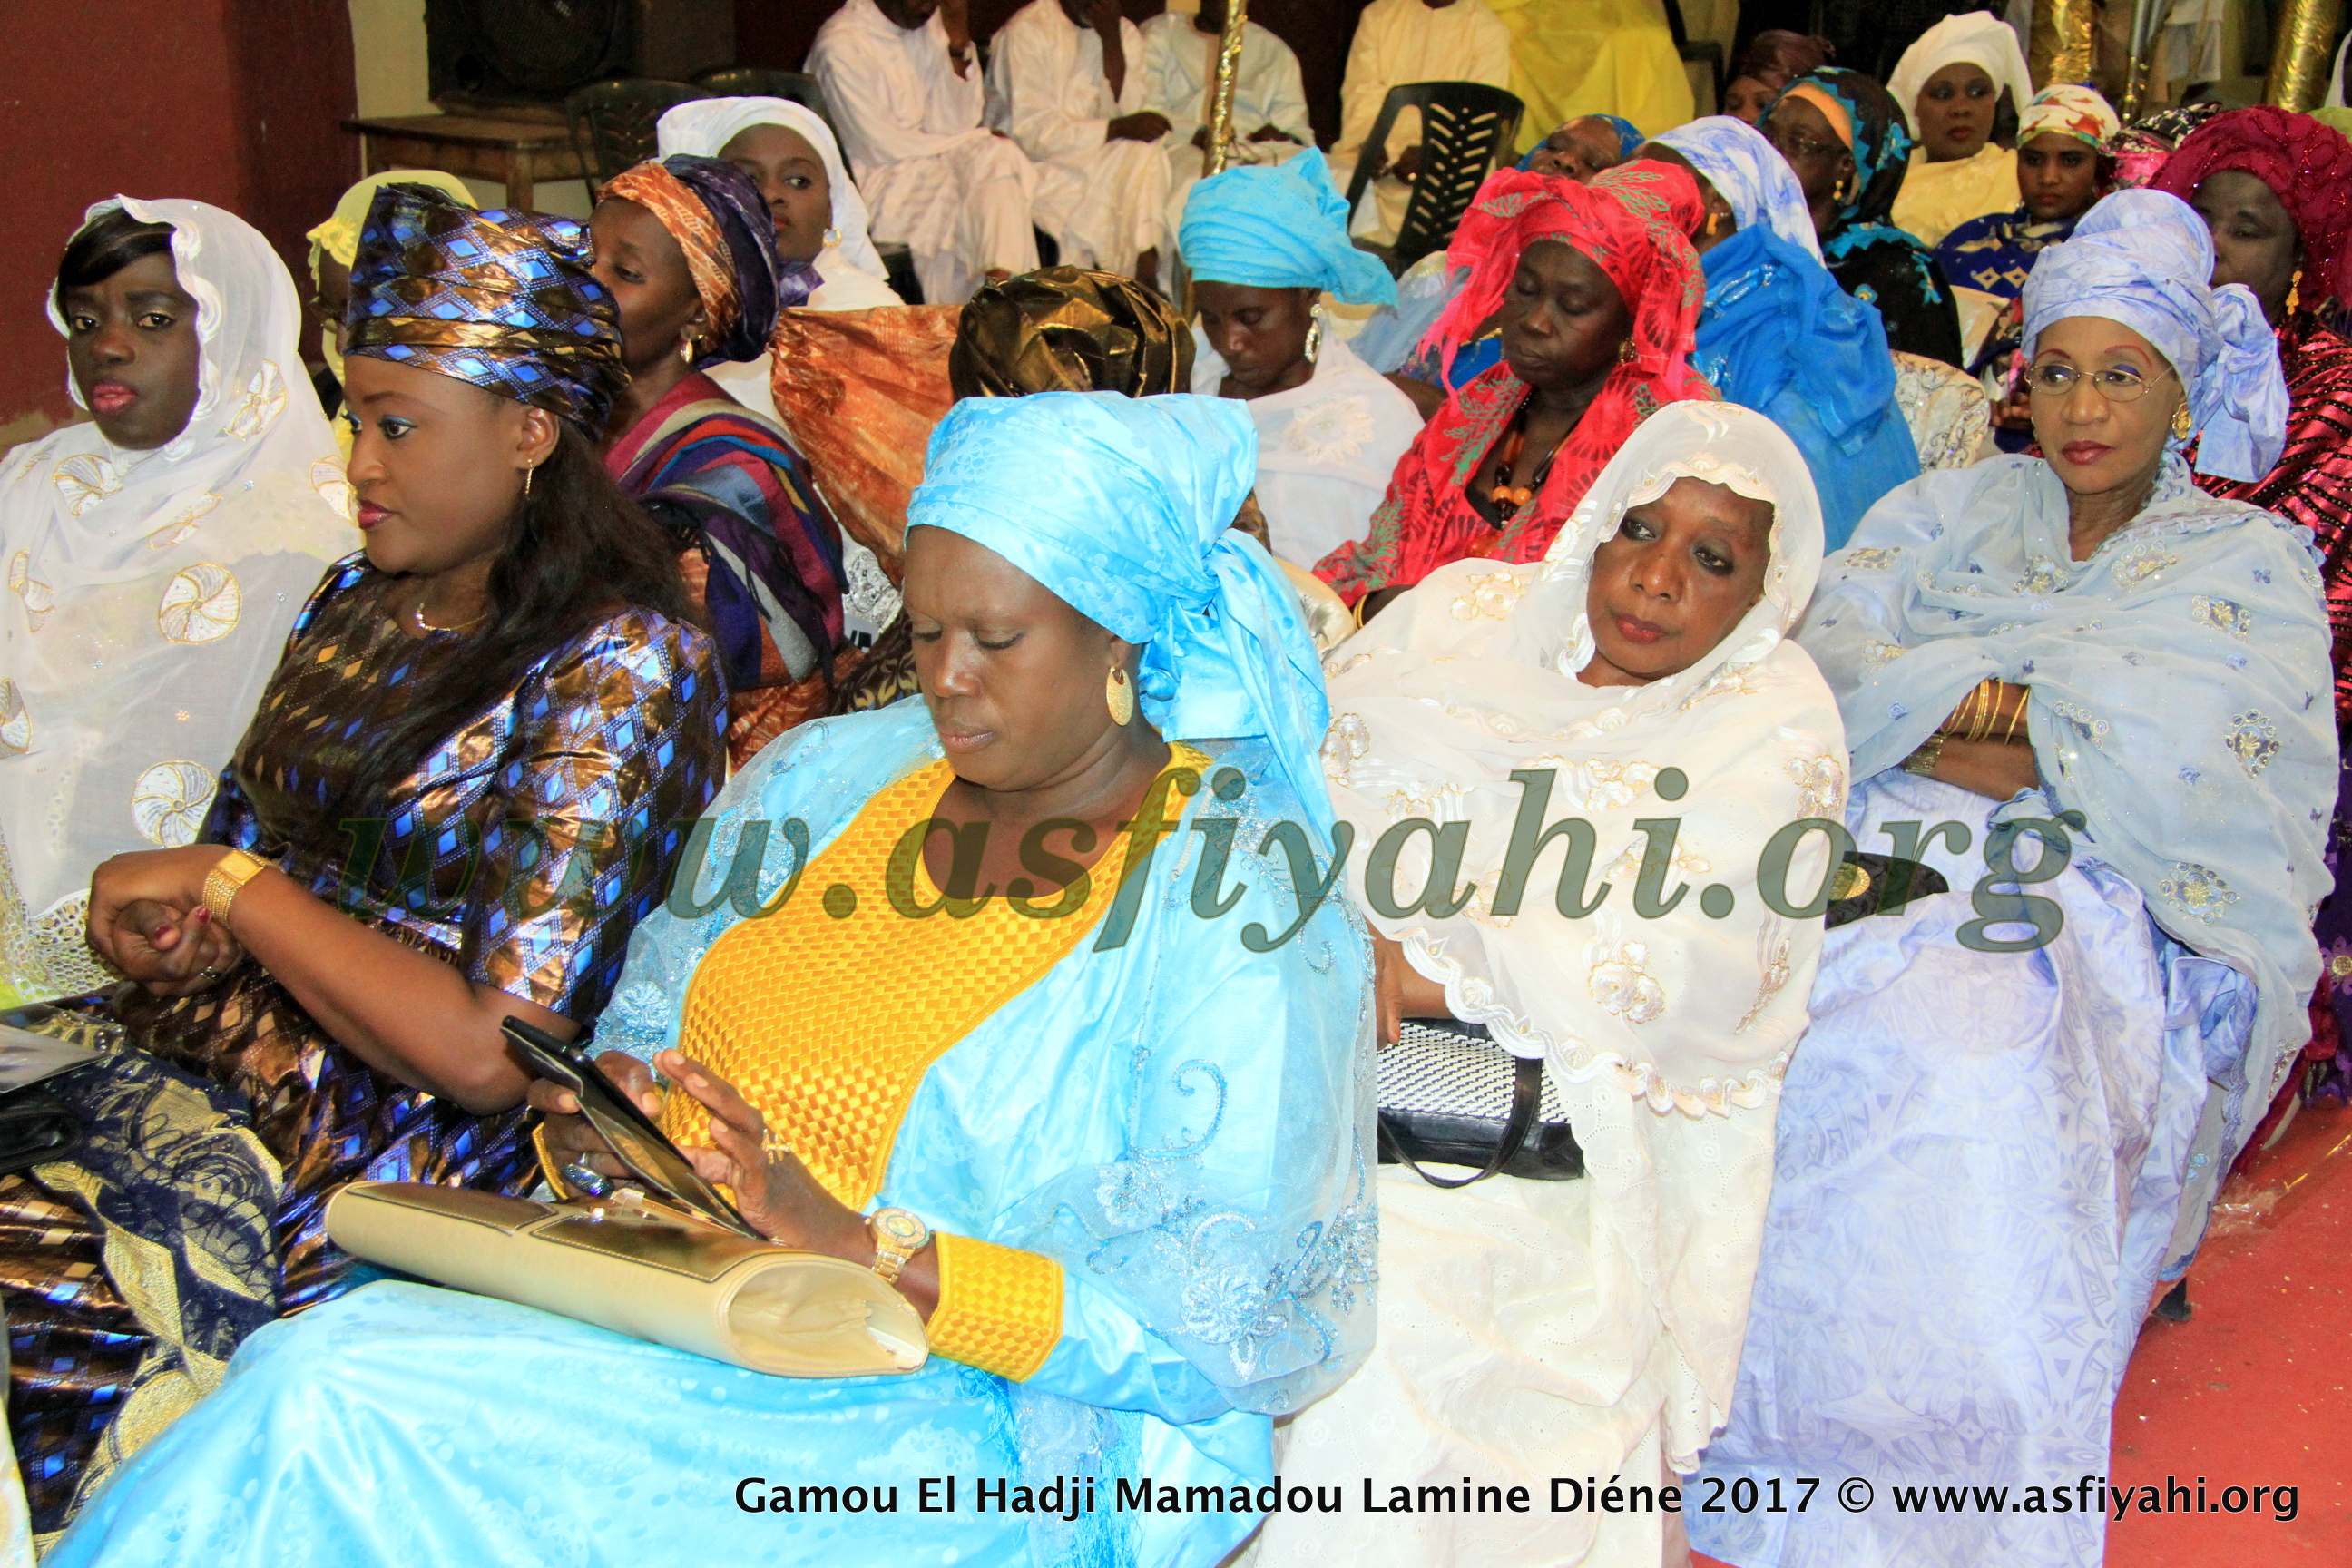 PHOTOS - 1ER AVRIL 2017 - Les Images du Gamou El hadj Amadou Lamine Diéne, edition 2017, présidé par Serigne Habib Sy Ibn Serigne Cheikh Tidiane Sy Al Maktoum